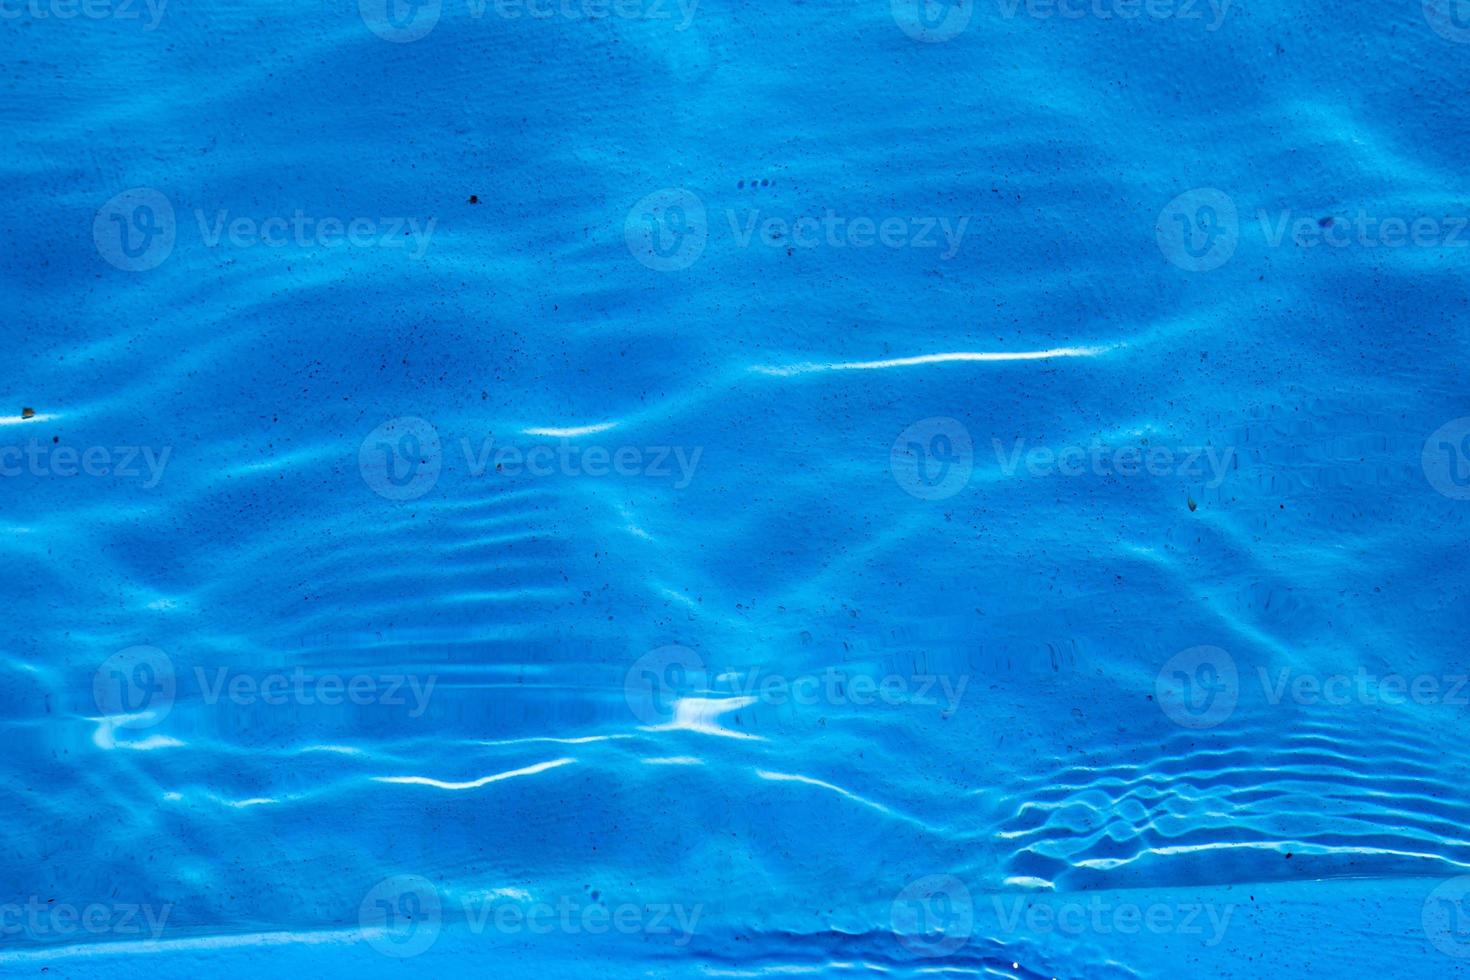 Schwimmbadoberfläche mit sauberem blauem Wasser foto